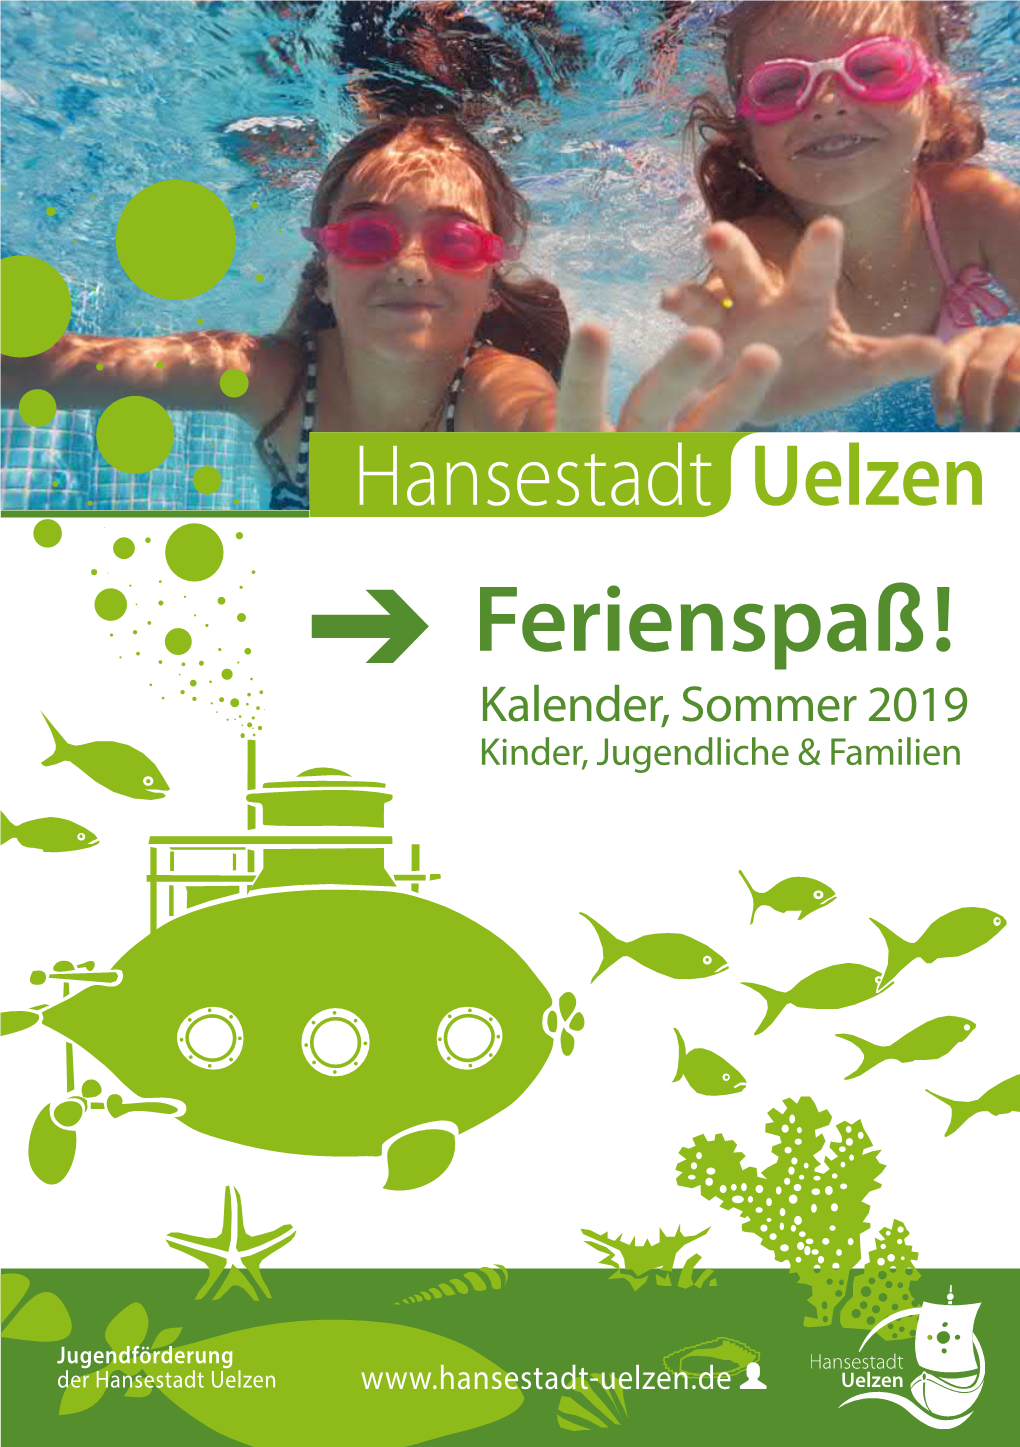 Ferienspaß! Kalender, Sommer 2019 Kinder, Jugendliche & Familien